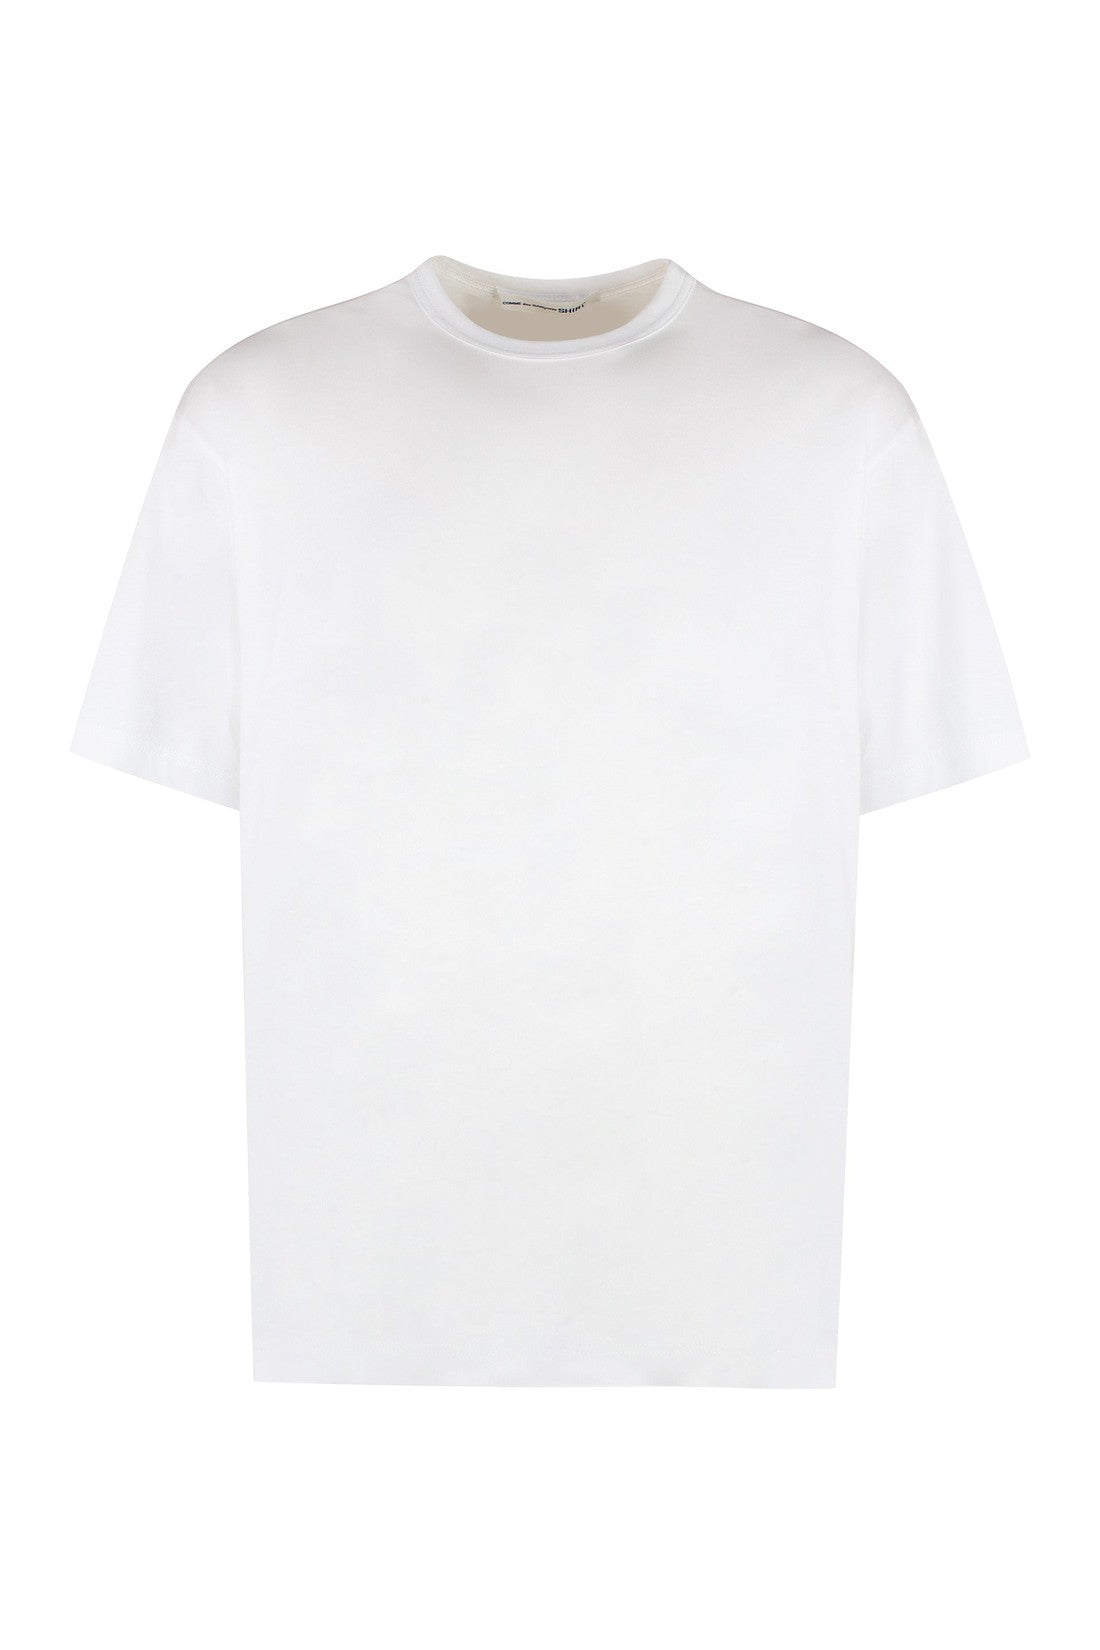 Comme des Garçons SHIRT-OUTLET-SALE-Cotton crew-neck T-shirt-ARCHIVIST